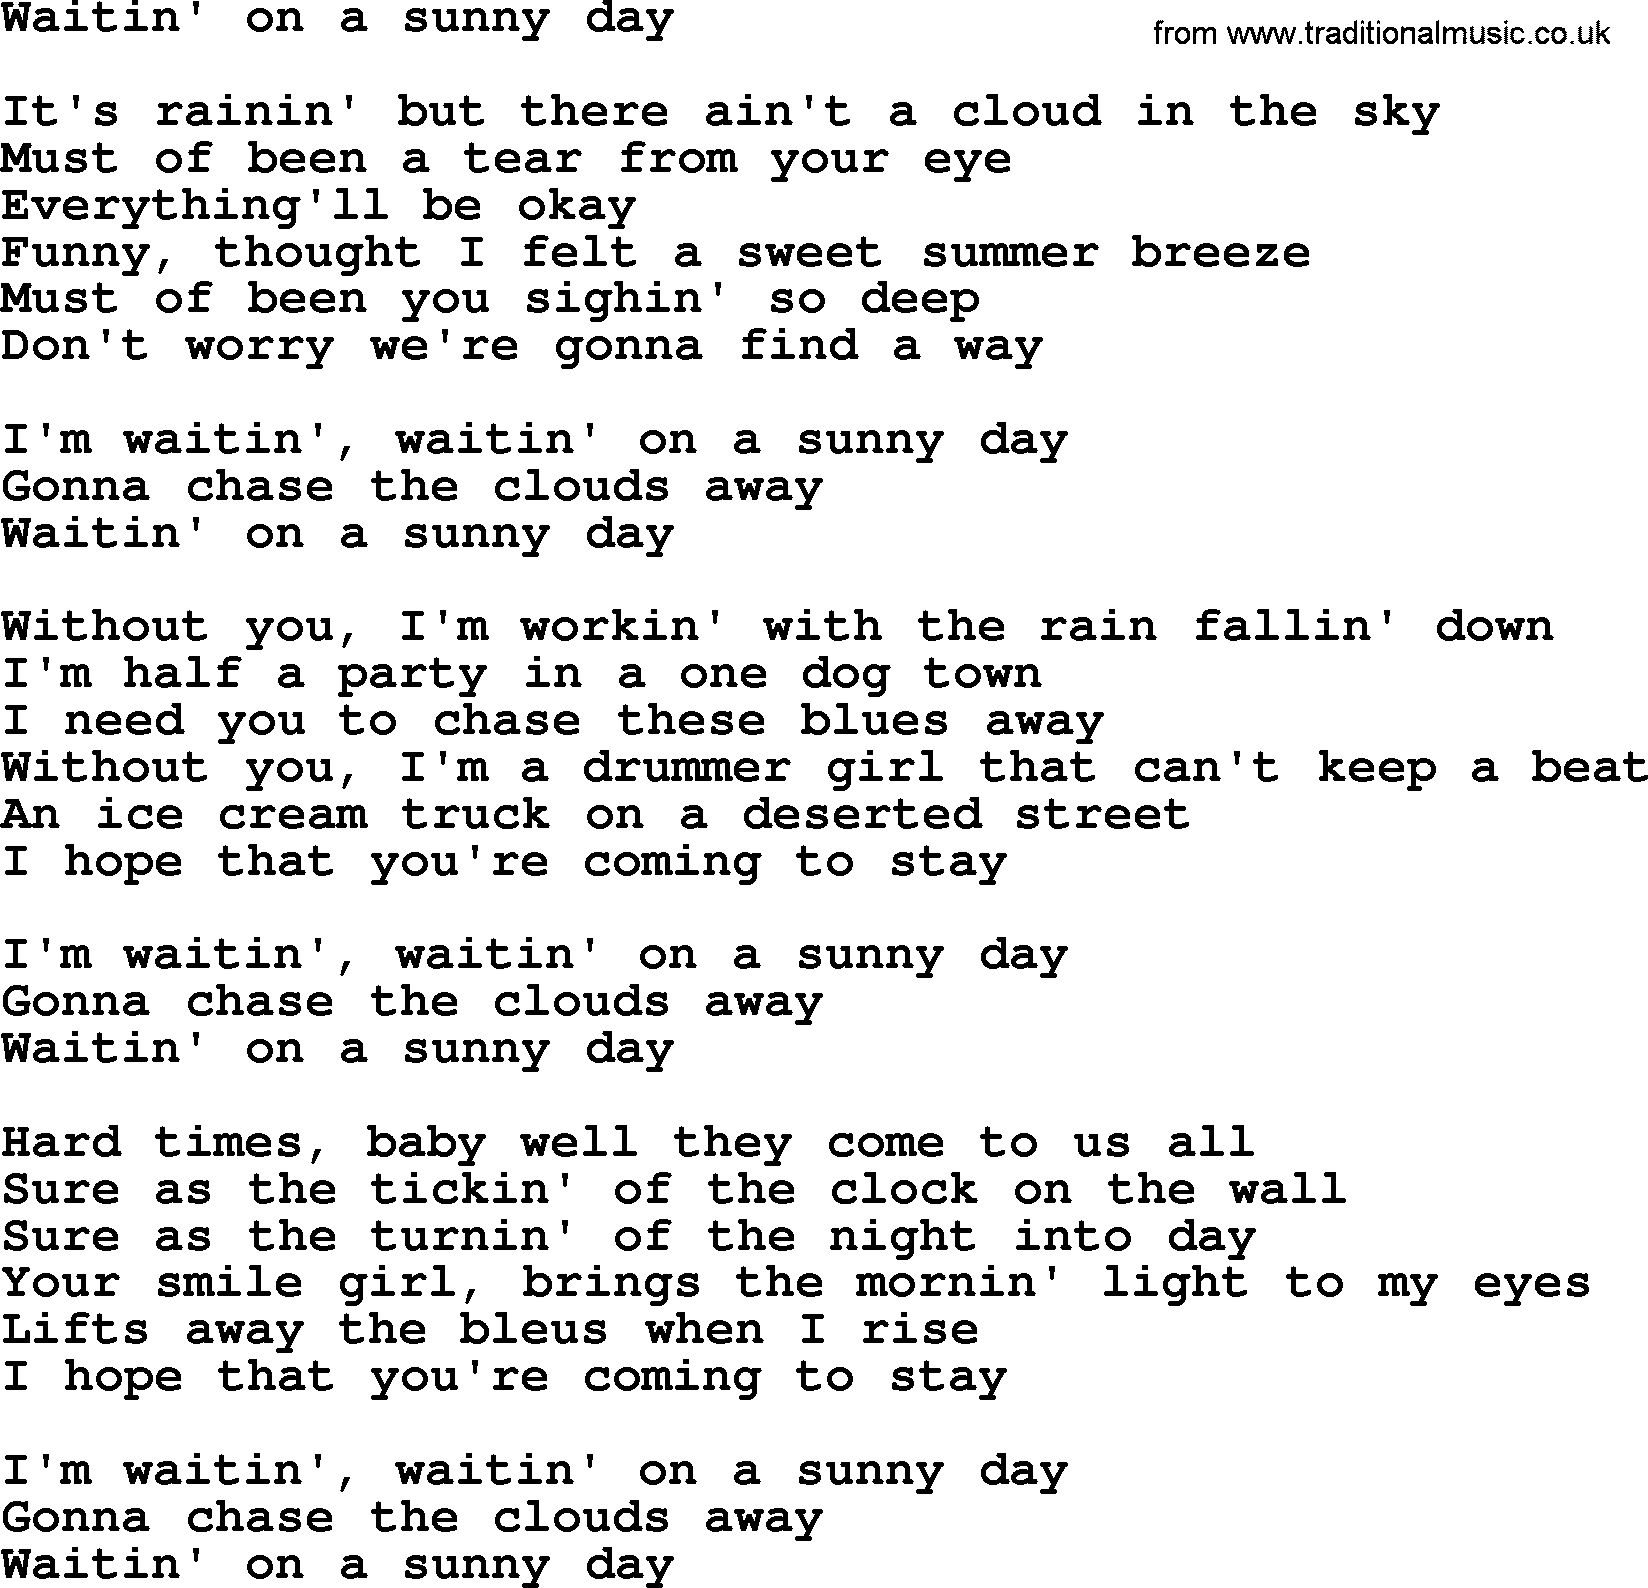 Bruce Springsteen song: Waitin' On A Sunny Day lyrics